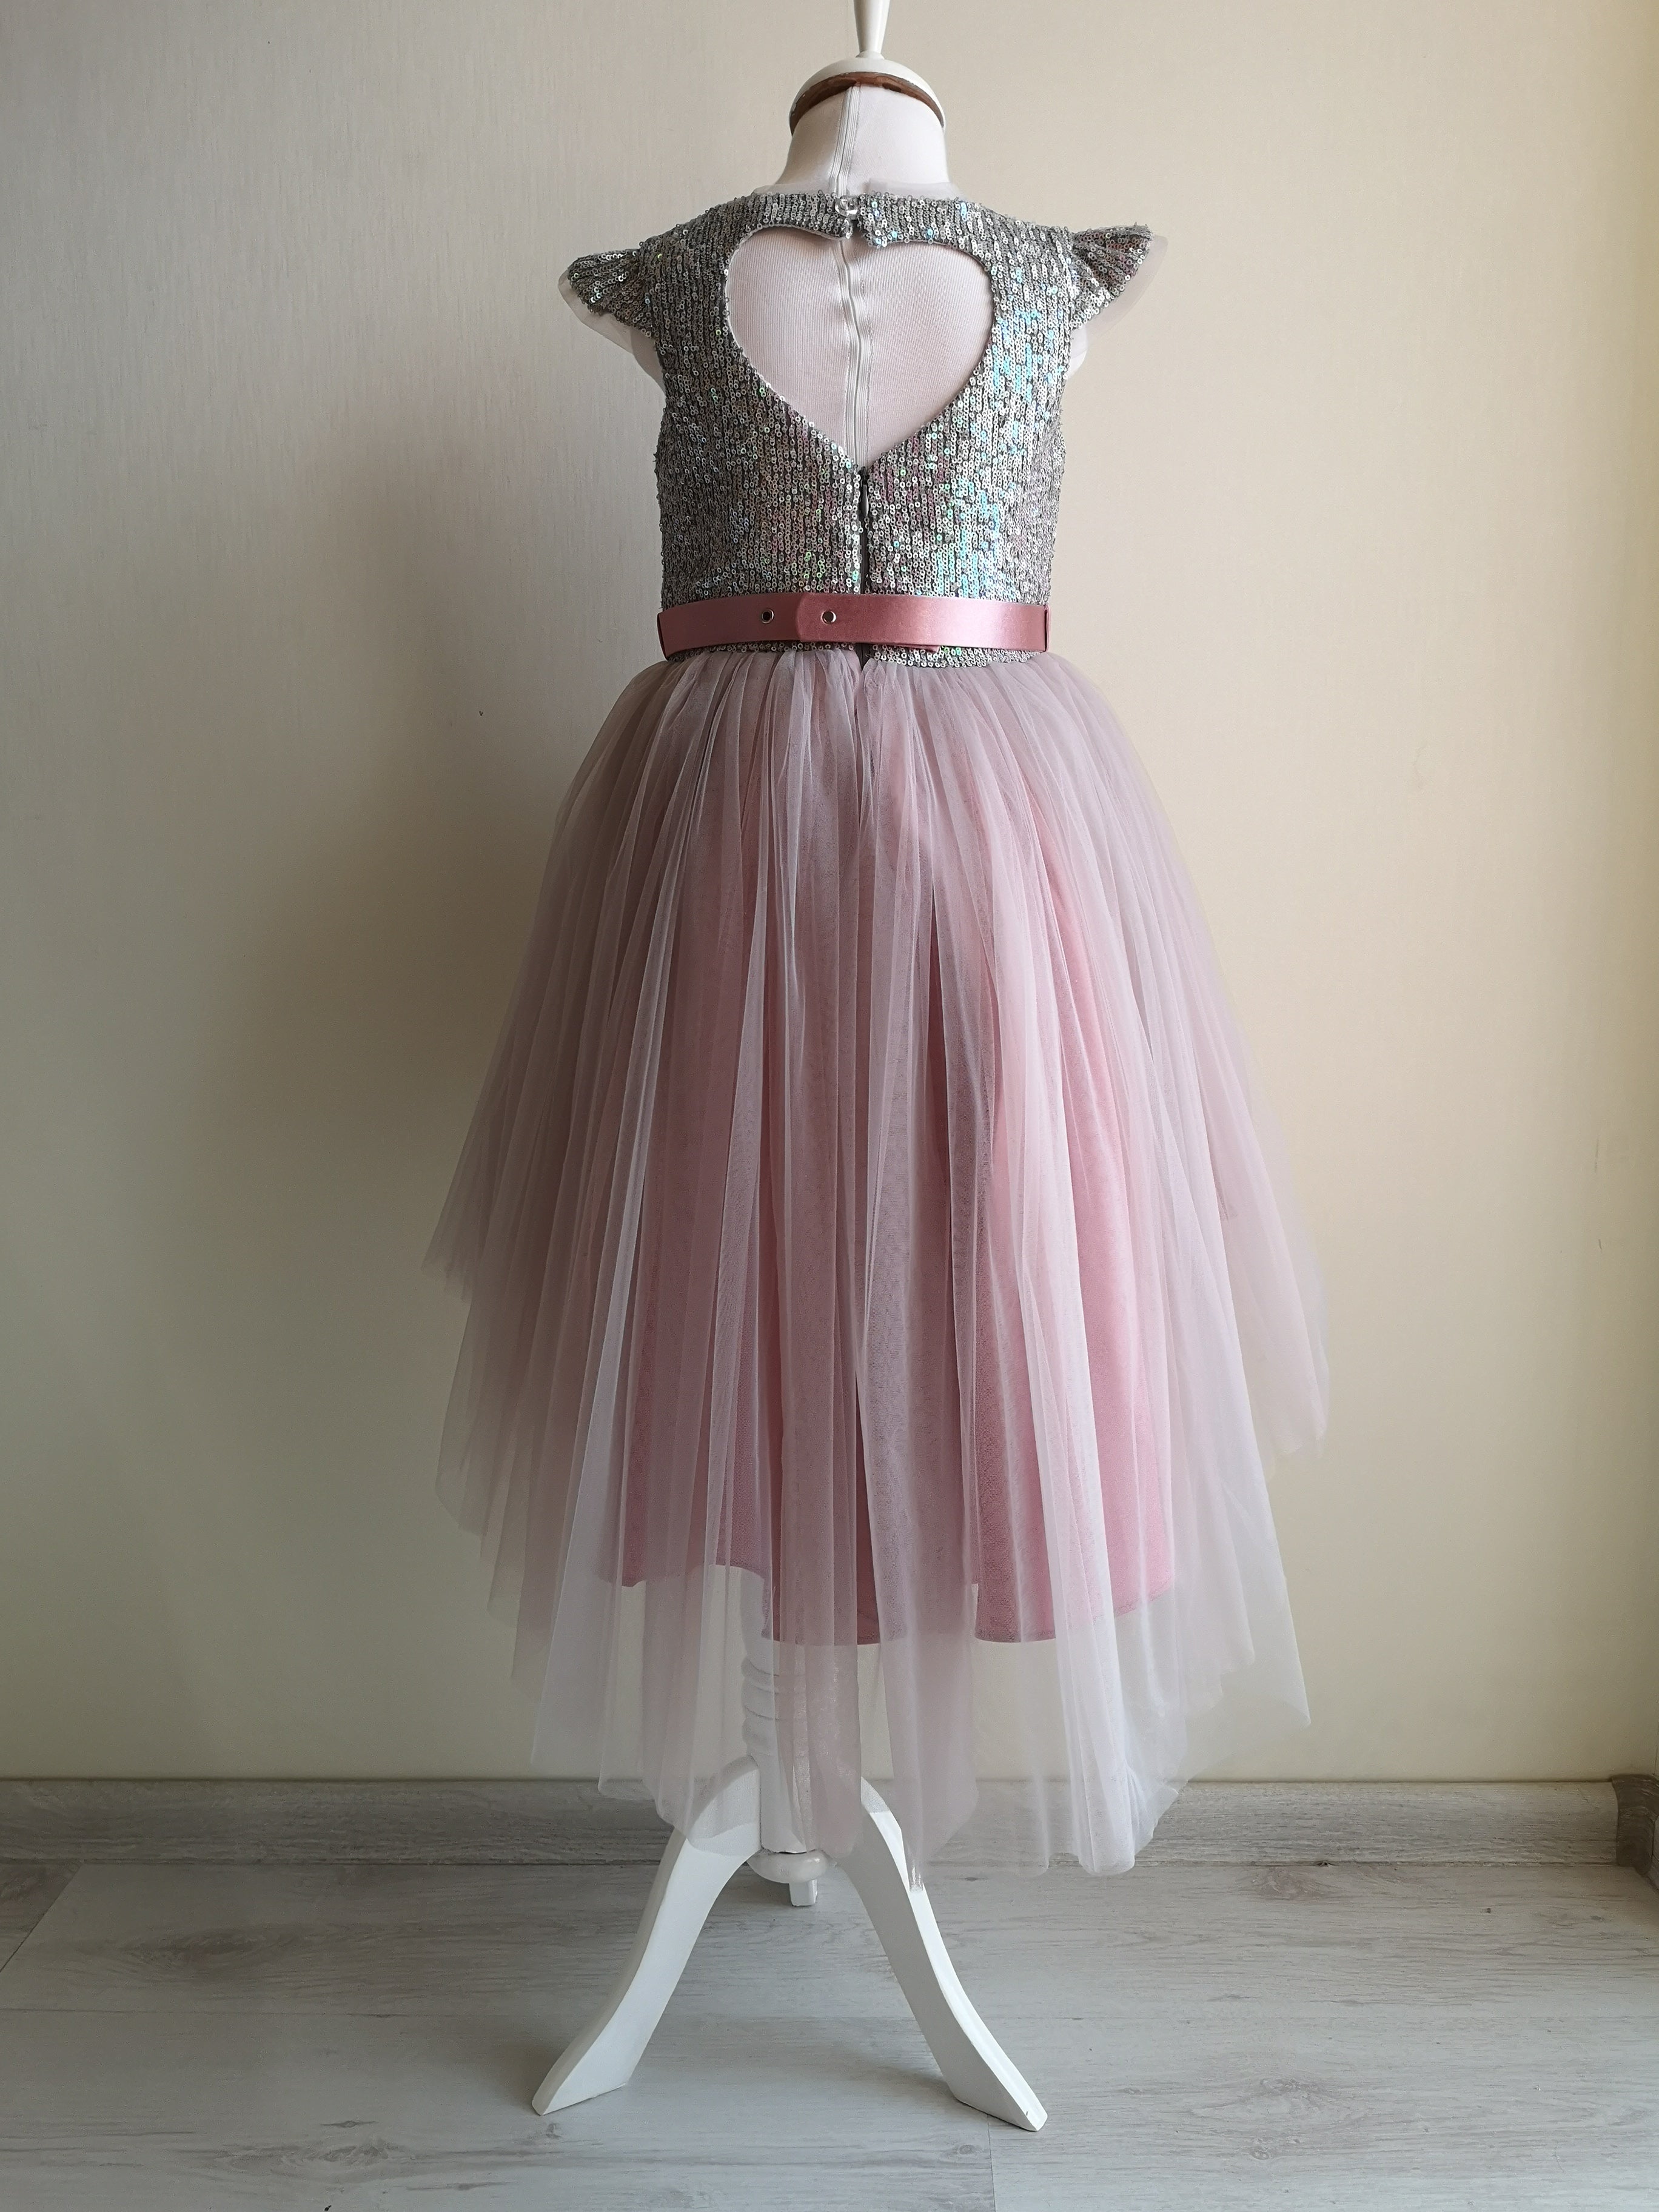 Rochie CopatiLeah culoare Roz, rochie cu bust argintiu. Rochii Elegante Fete. Rochite de ocazie, evenimente. Livrare gratuita pe Copatiliu.ro